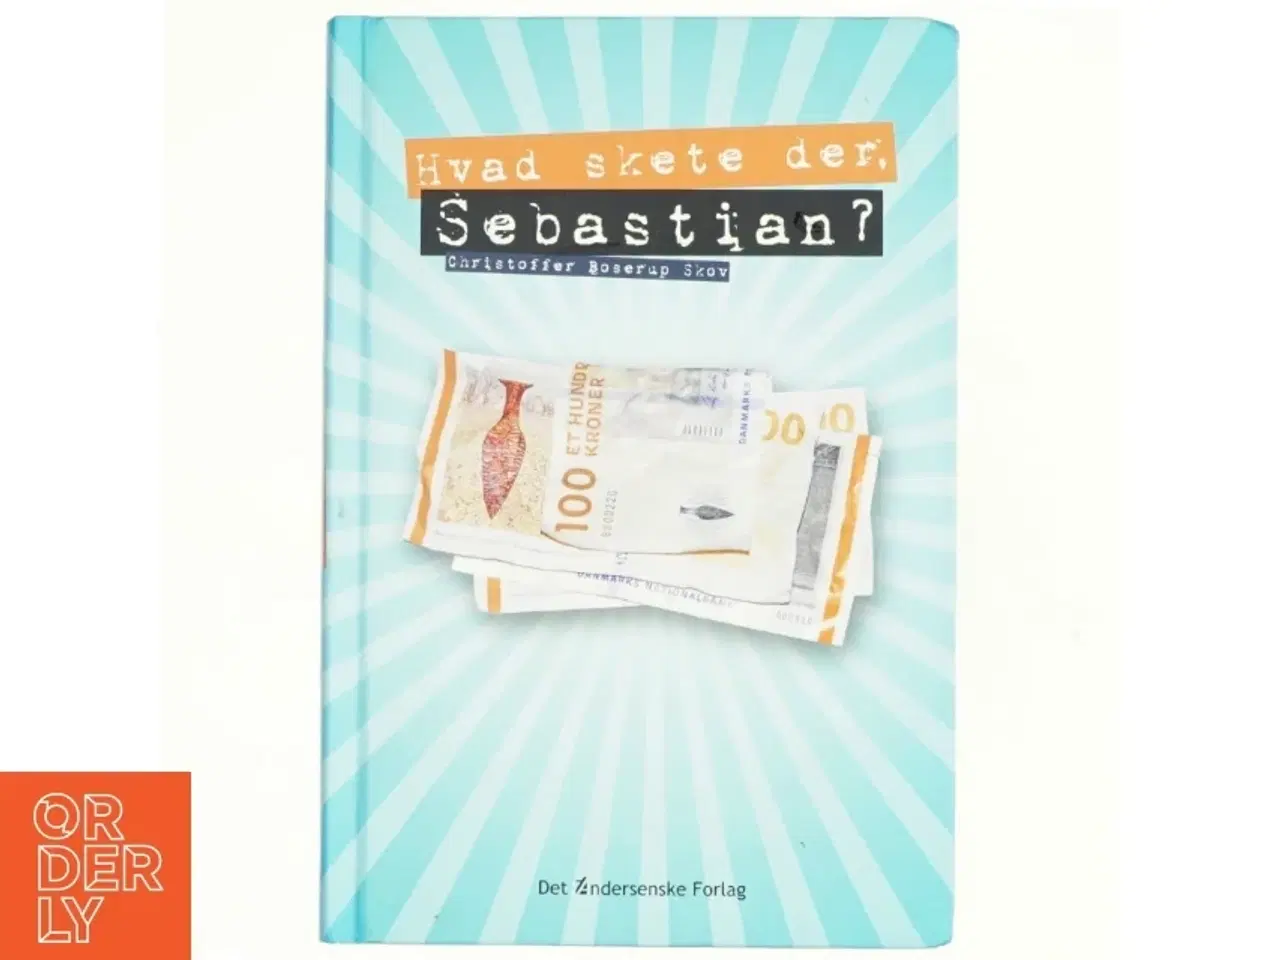 Billede 1 - Hvad skete der, Sebastian? af Christoffer Boserup Skov (Bog)